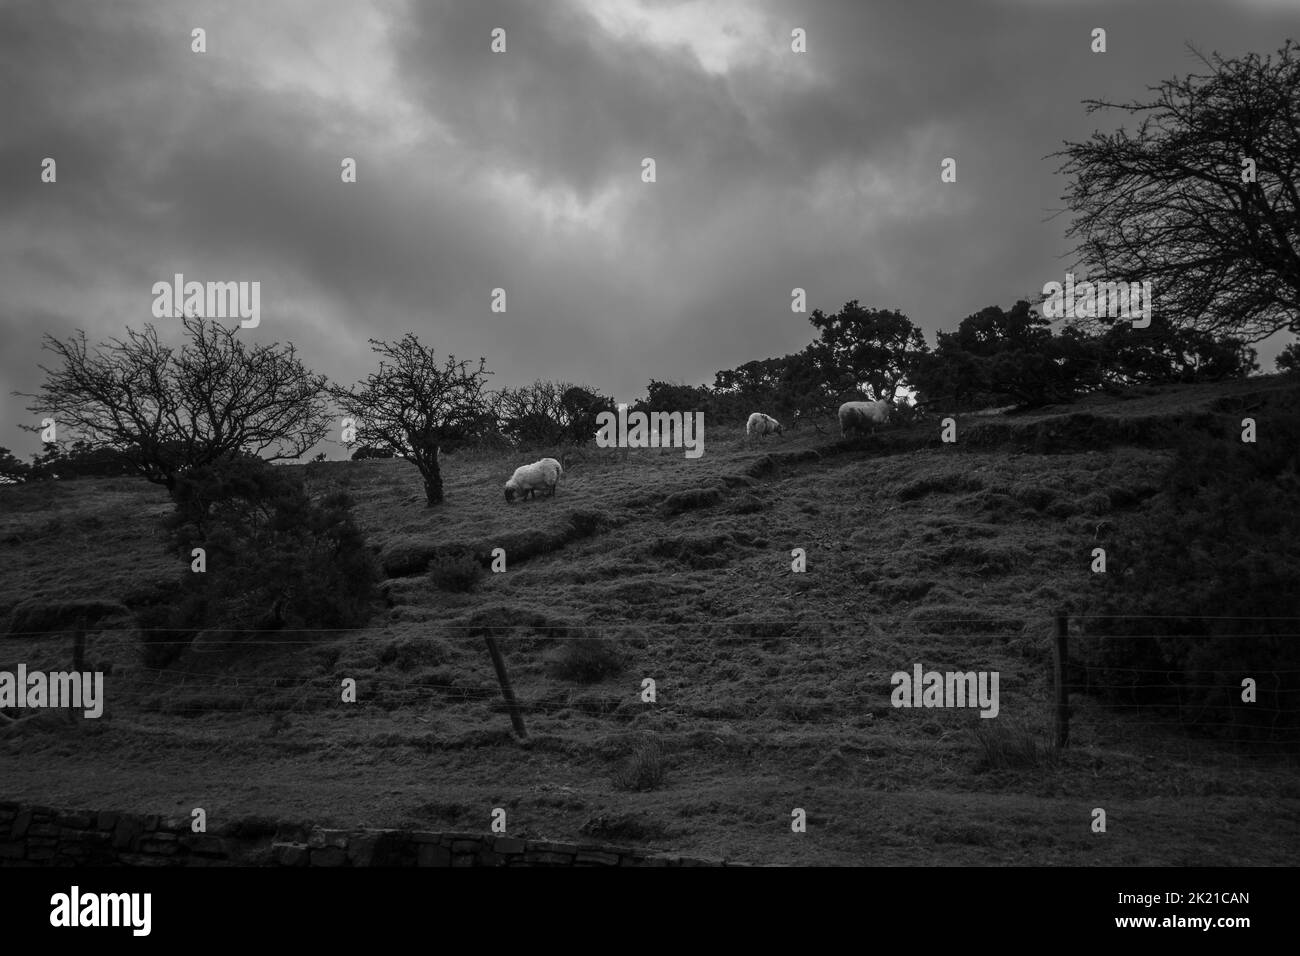 Un cliché noir et blanc d'une pente d'une colline remplie d'arbres et de moutons Banque D'Images